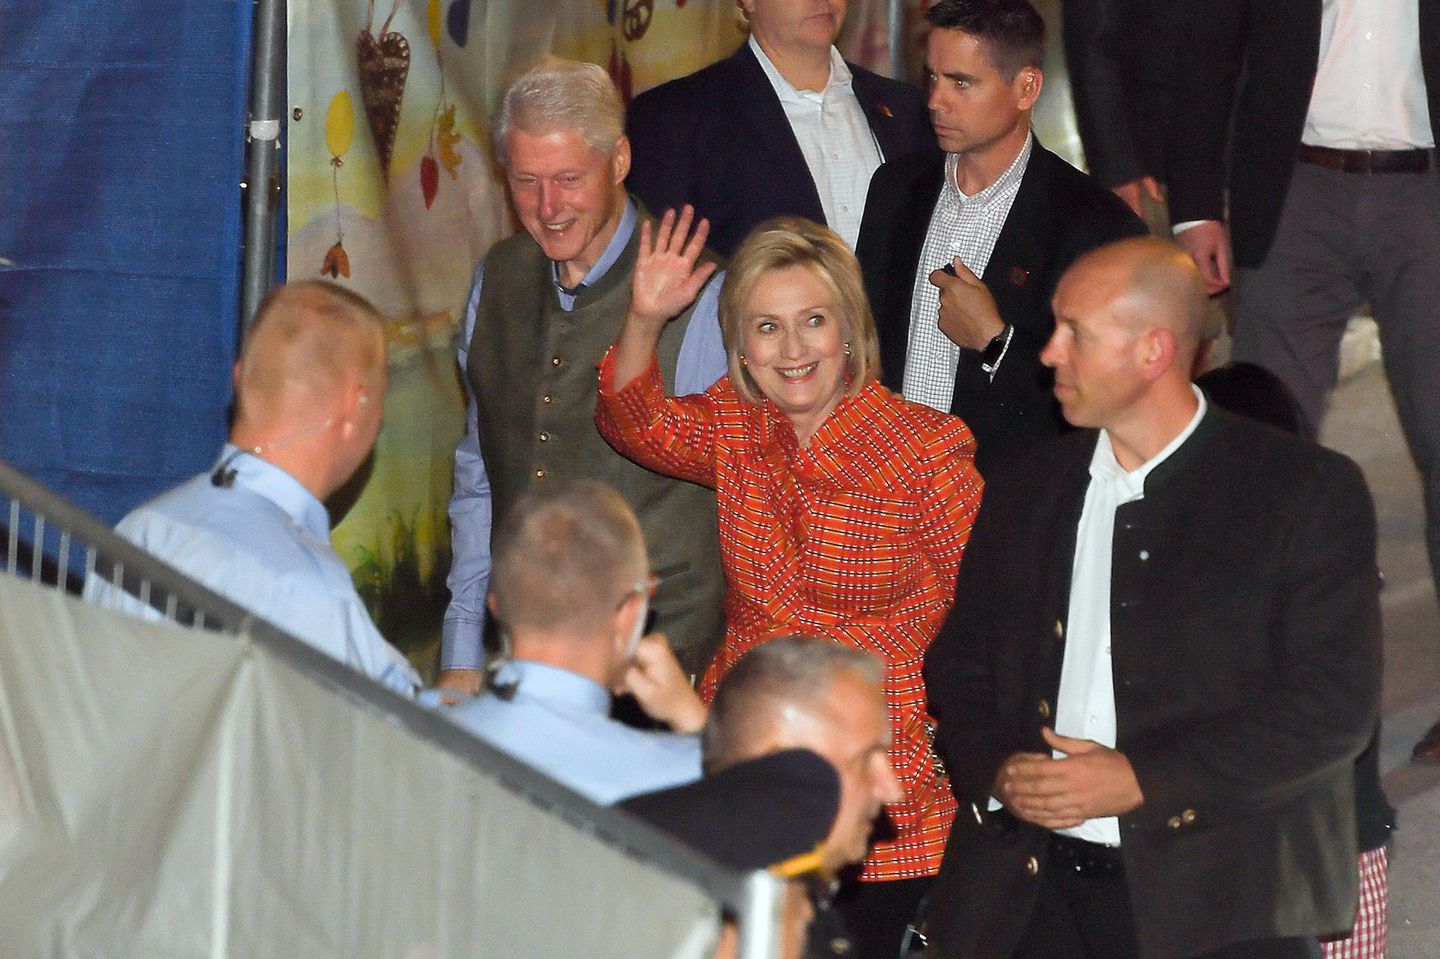 Und Oktoberfest-Besucher Bill hat auch seine Frau, die ehemalige Präsidentschaftskandidation Hillary Clinton in München an seiner Seite, allerdings im Kostüm, nicht im Dirndl. 